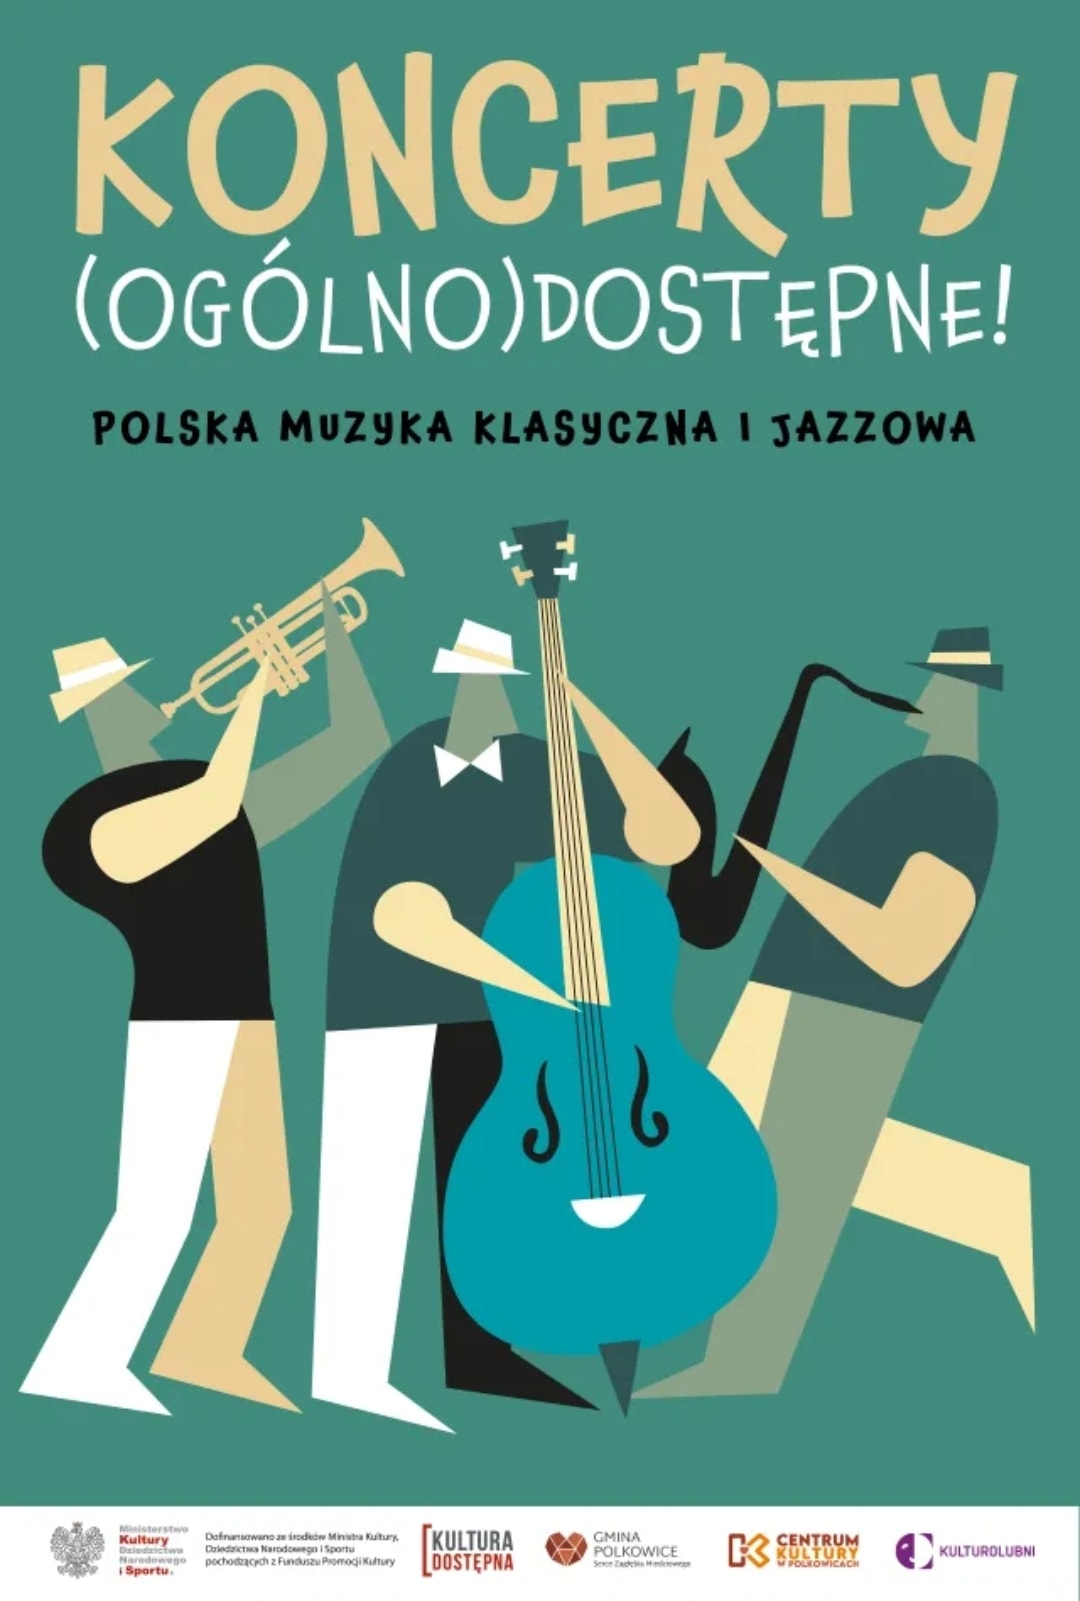 Koncerty (ogólno)dostępne - polska muzyka klasyczna i jazzowa